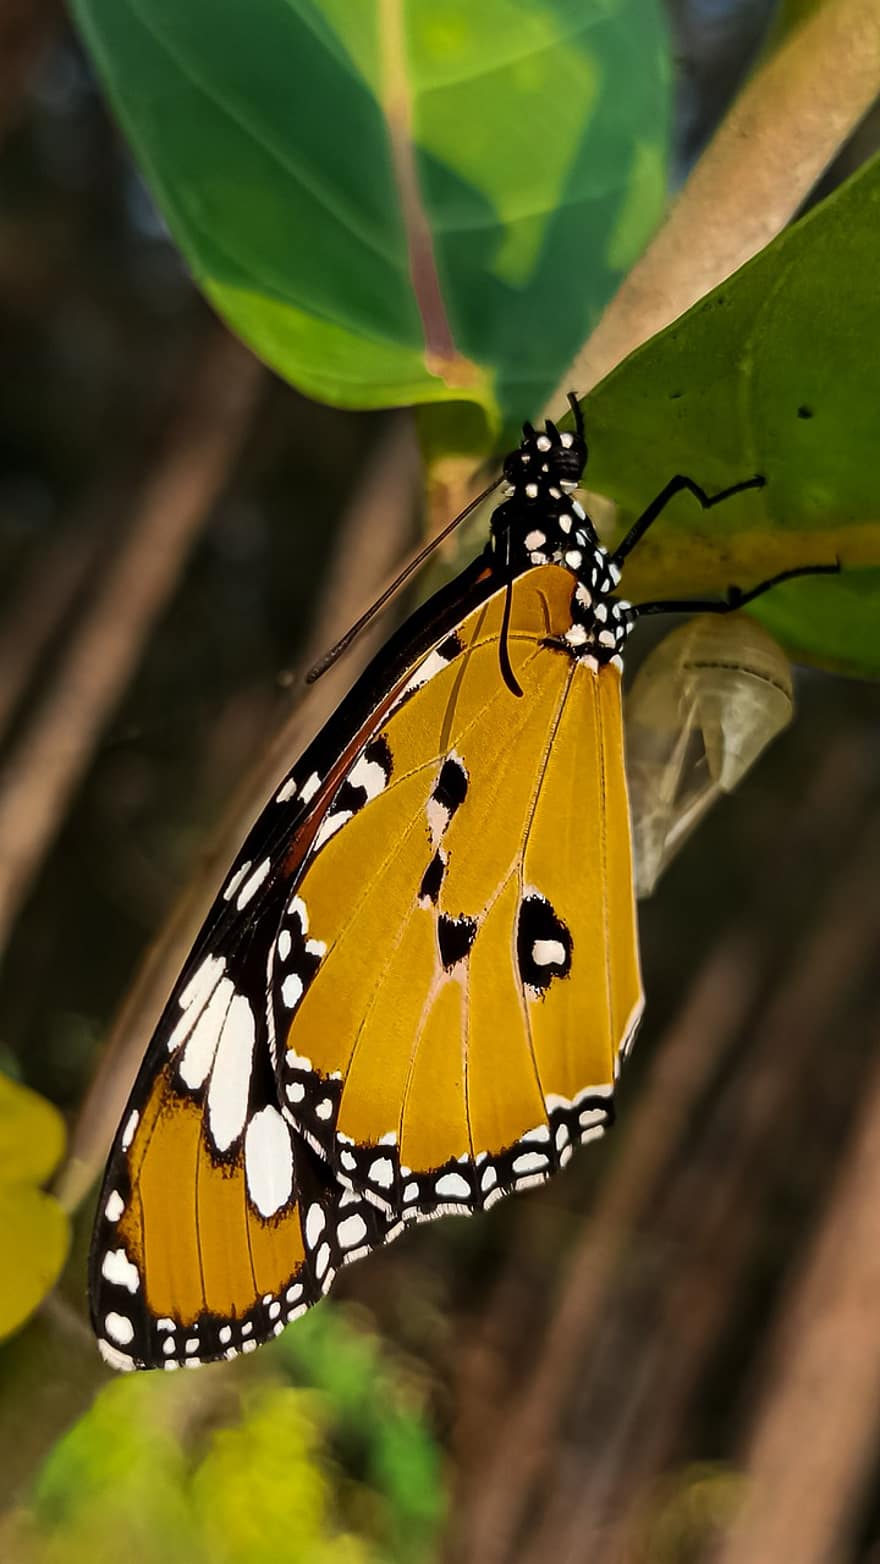 Schmetterling, Insekt, geflügeltes Insekt, Schmetterlingsflügel, Fauna, Natur, Nahansicht, mehrfarbig, Makro, grüne Farbe, Gelb